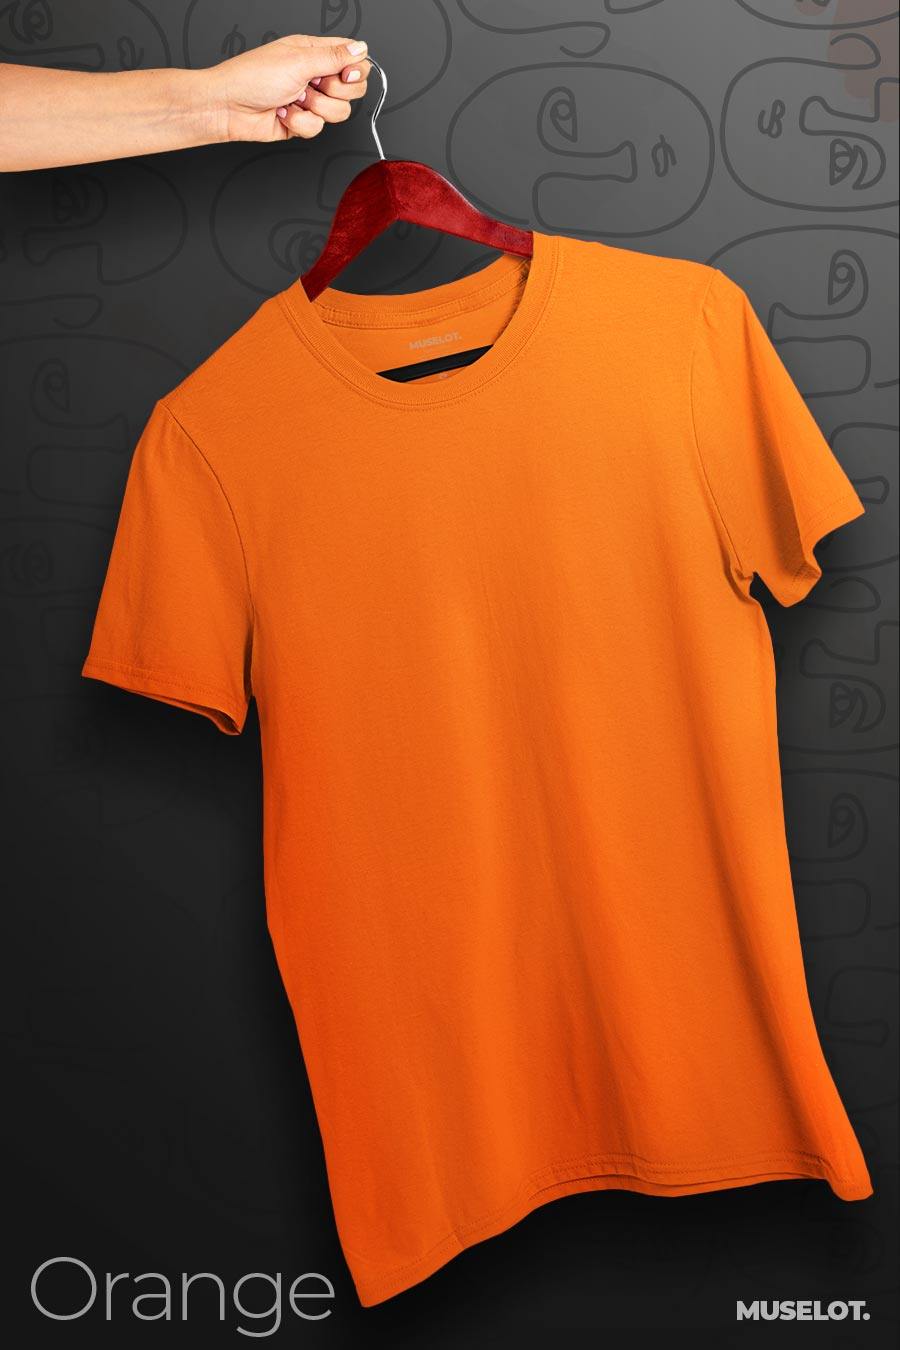 plain t shirts - Plus size t shirts (light solid colors)  - MUSELOT